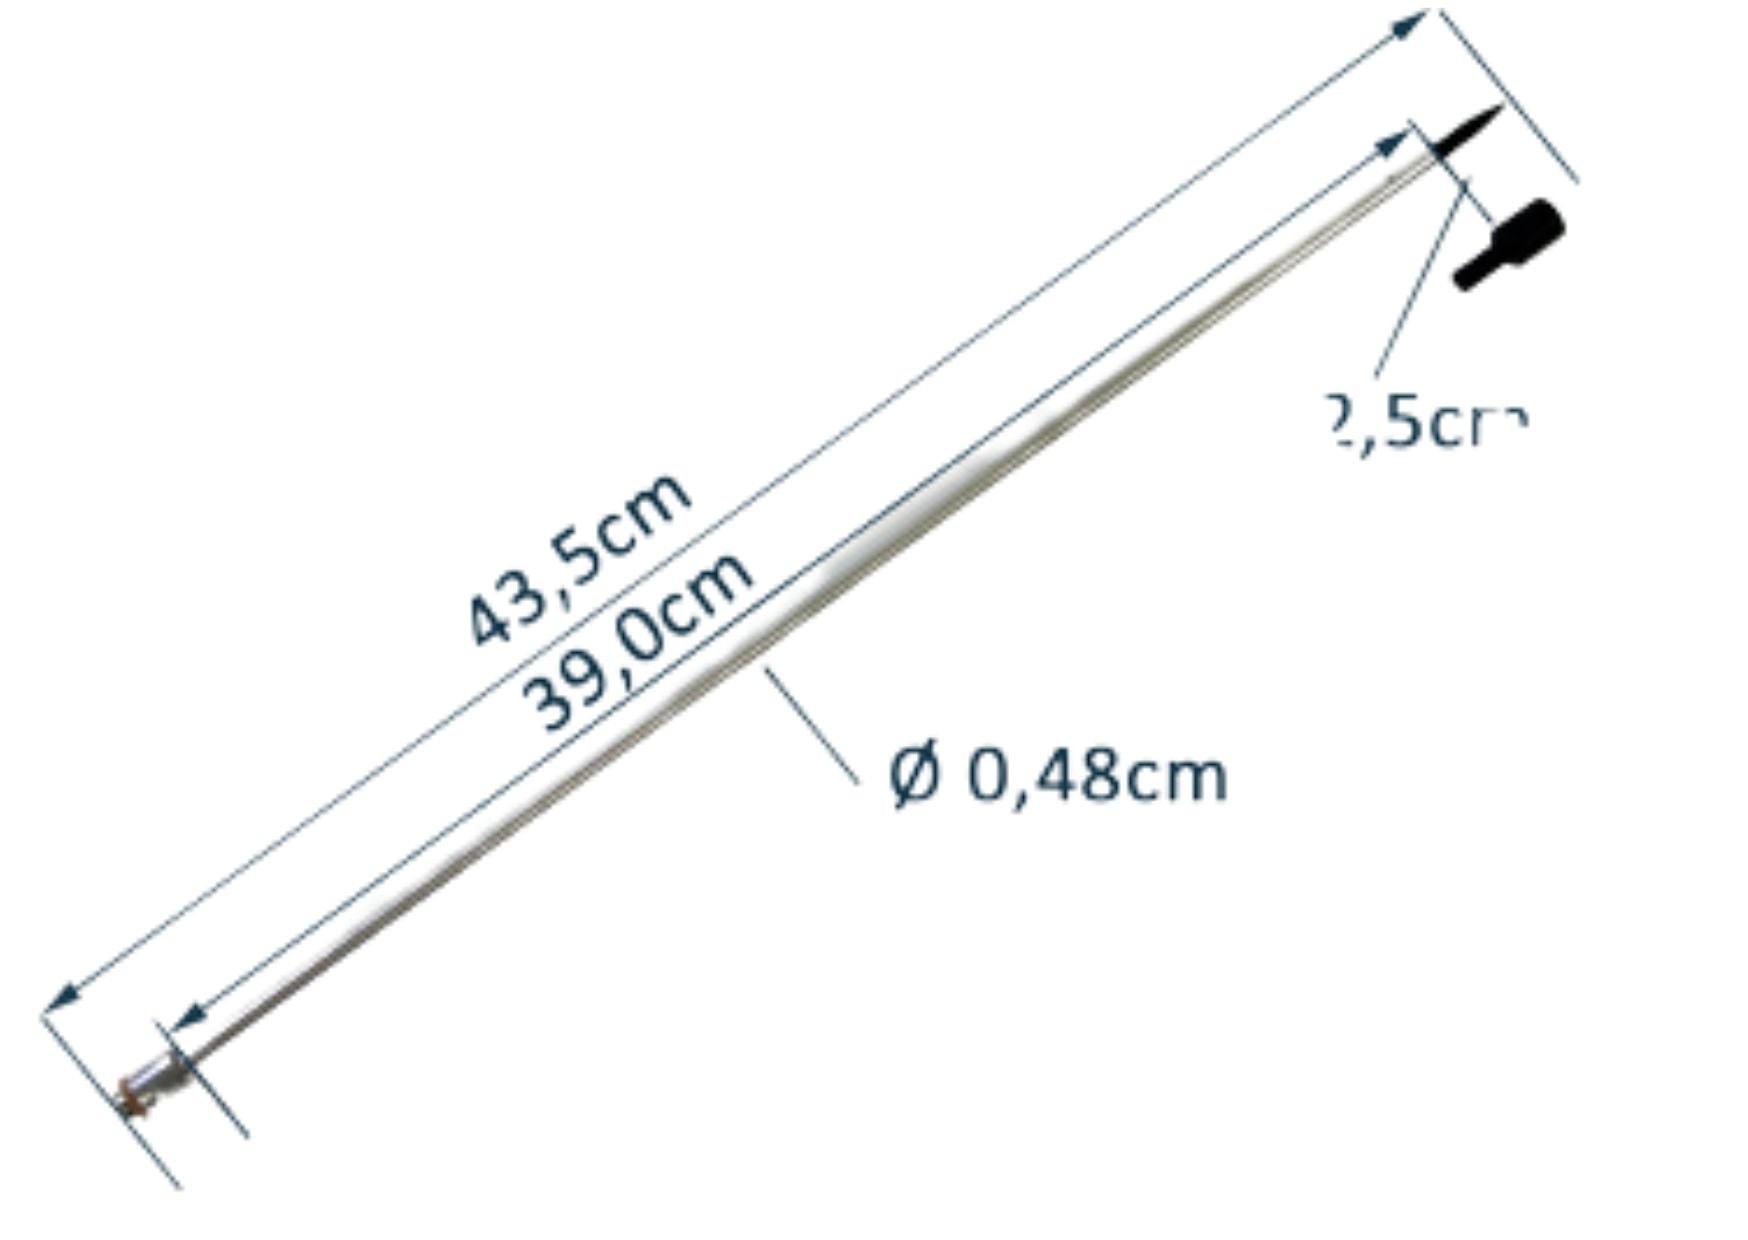 Trocar Hypo Shaft, 3/16" x 42 cm (16.5"), 5/16-36 thread-M, TP6333 - 0